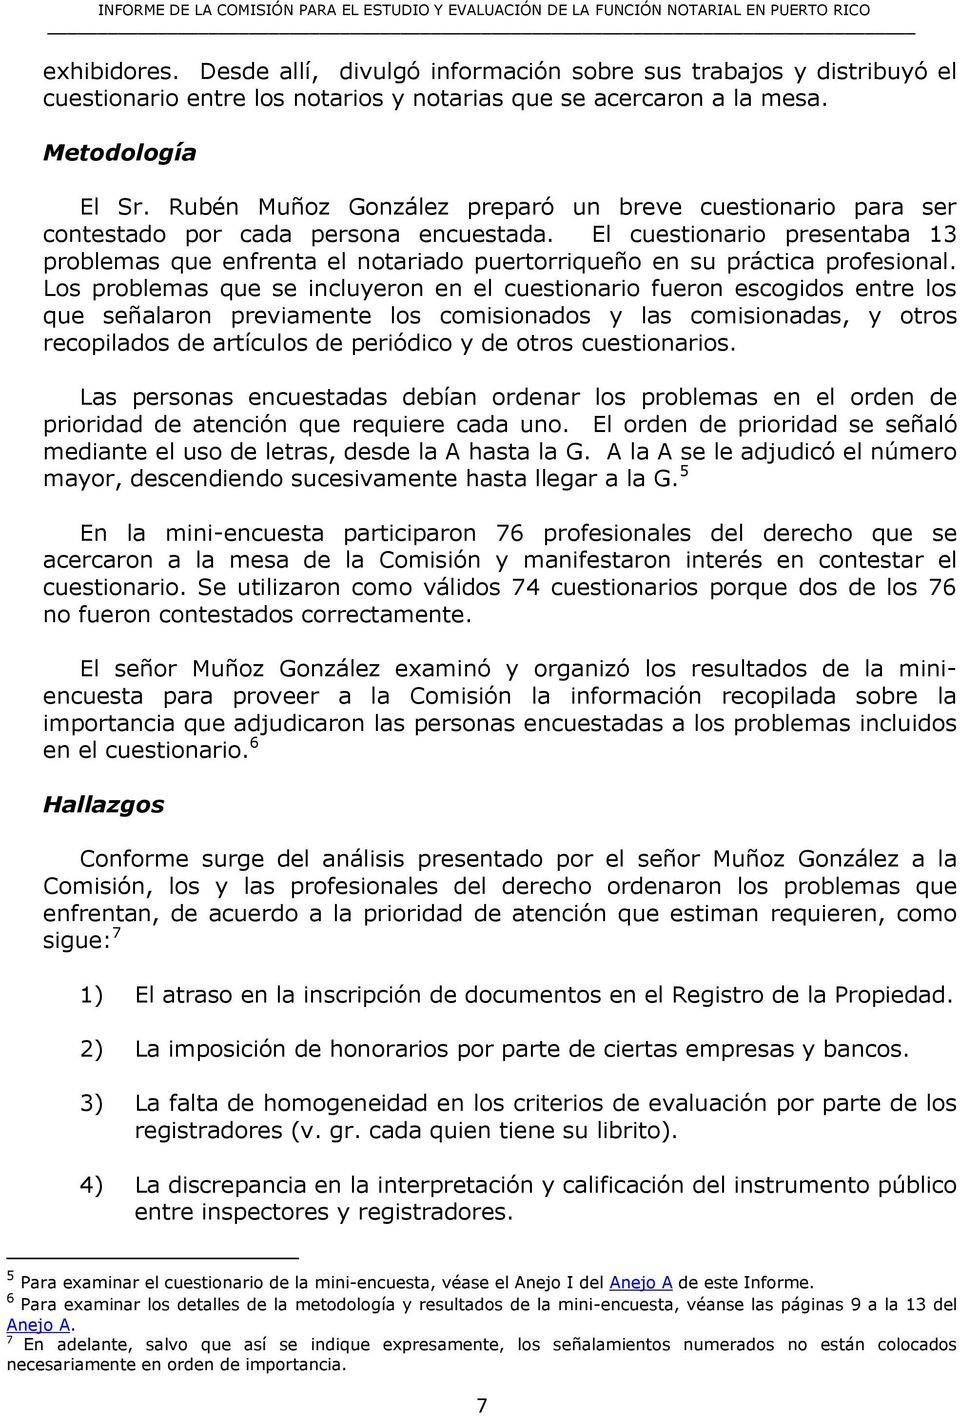 El cuestionario presentaba 13 problemas que enfrenta el notariado puertorriqueño en su práctica profesional.